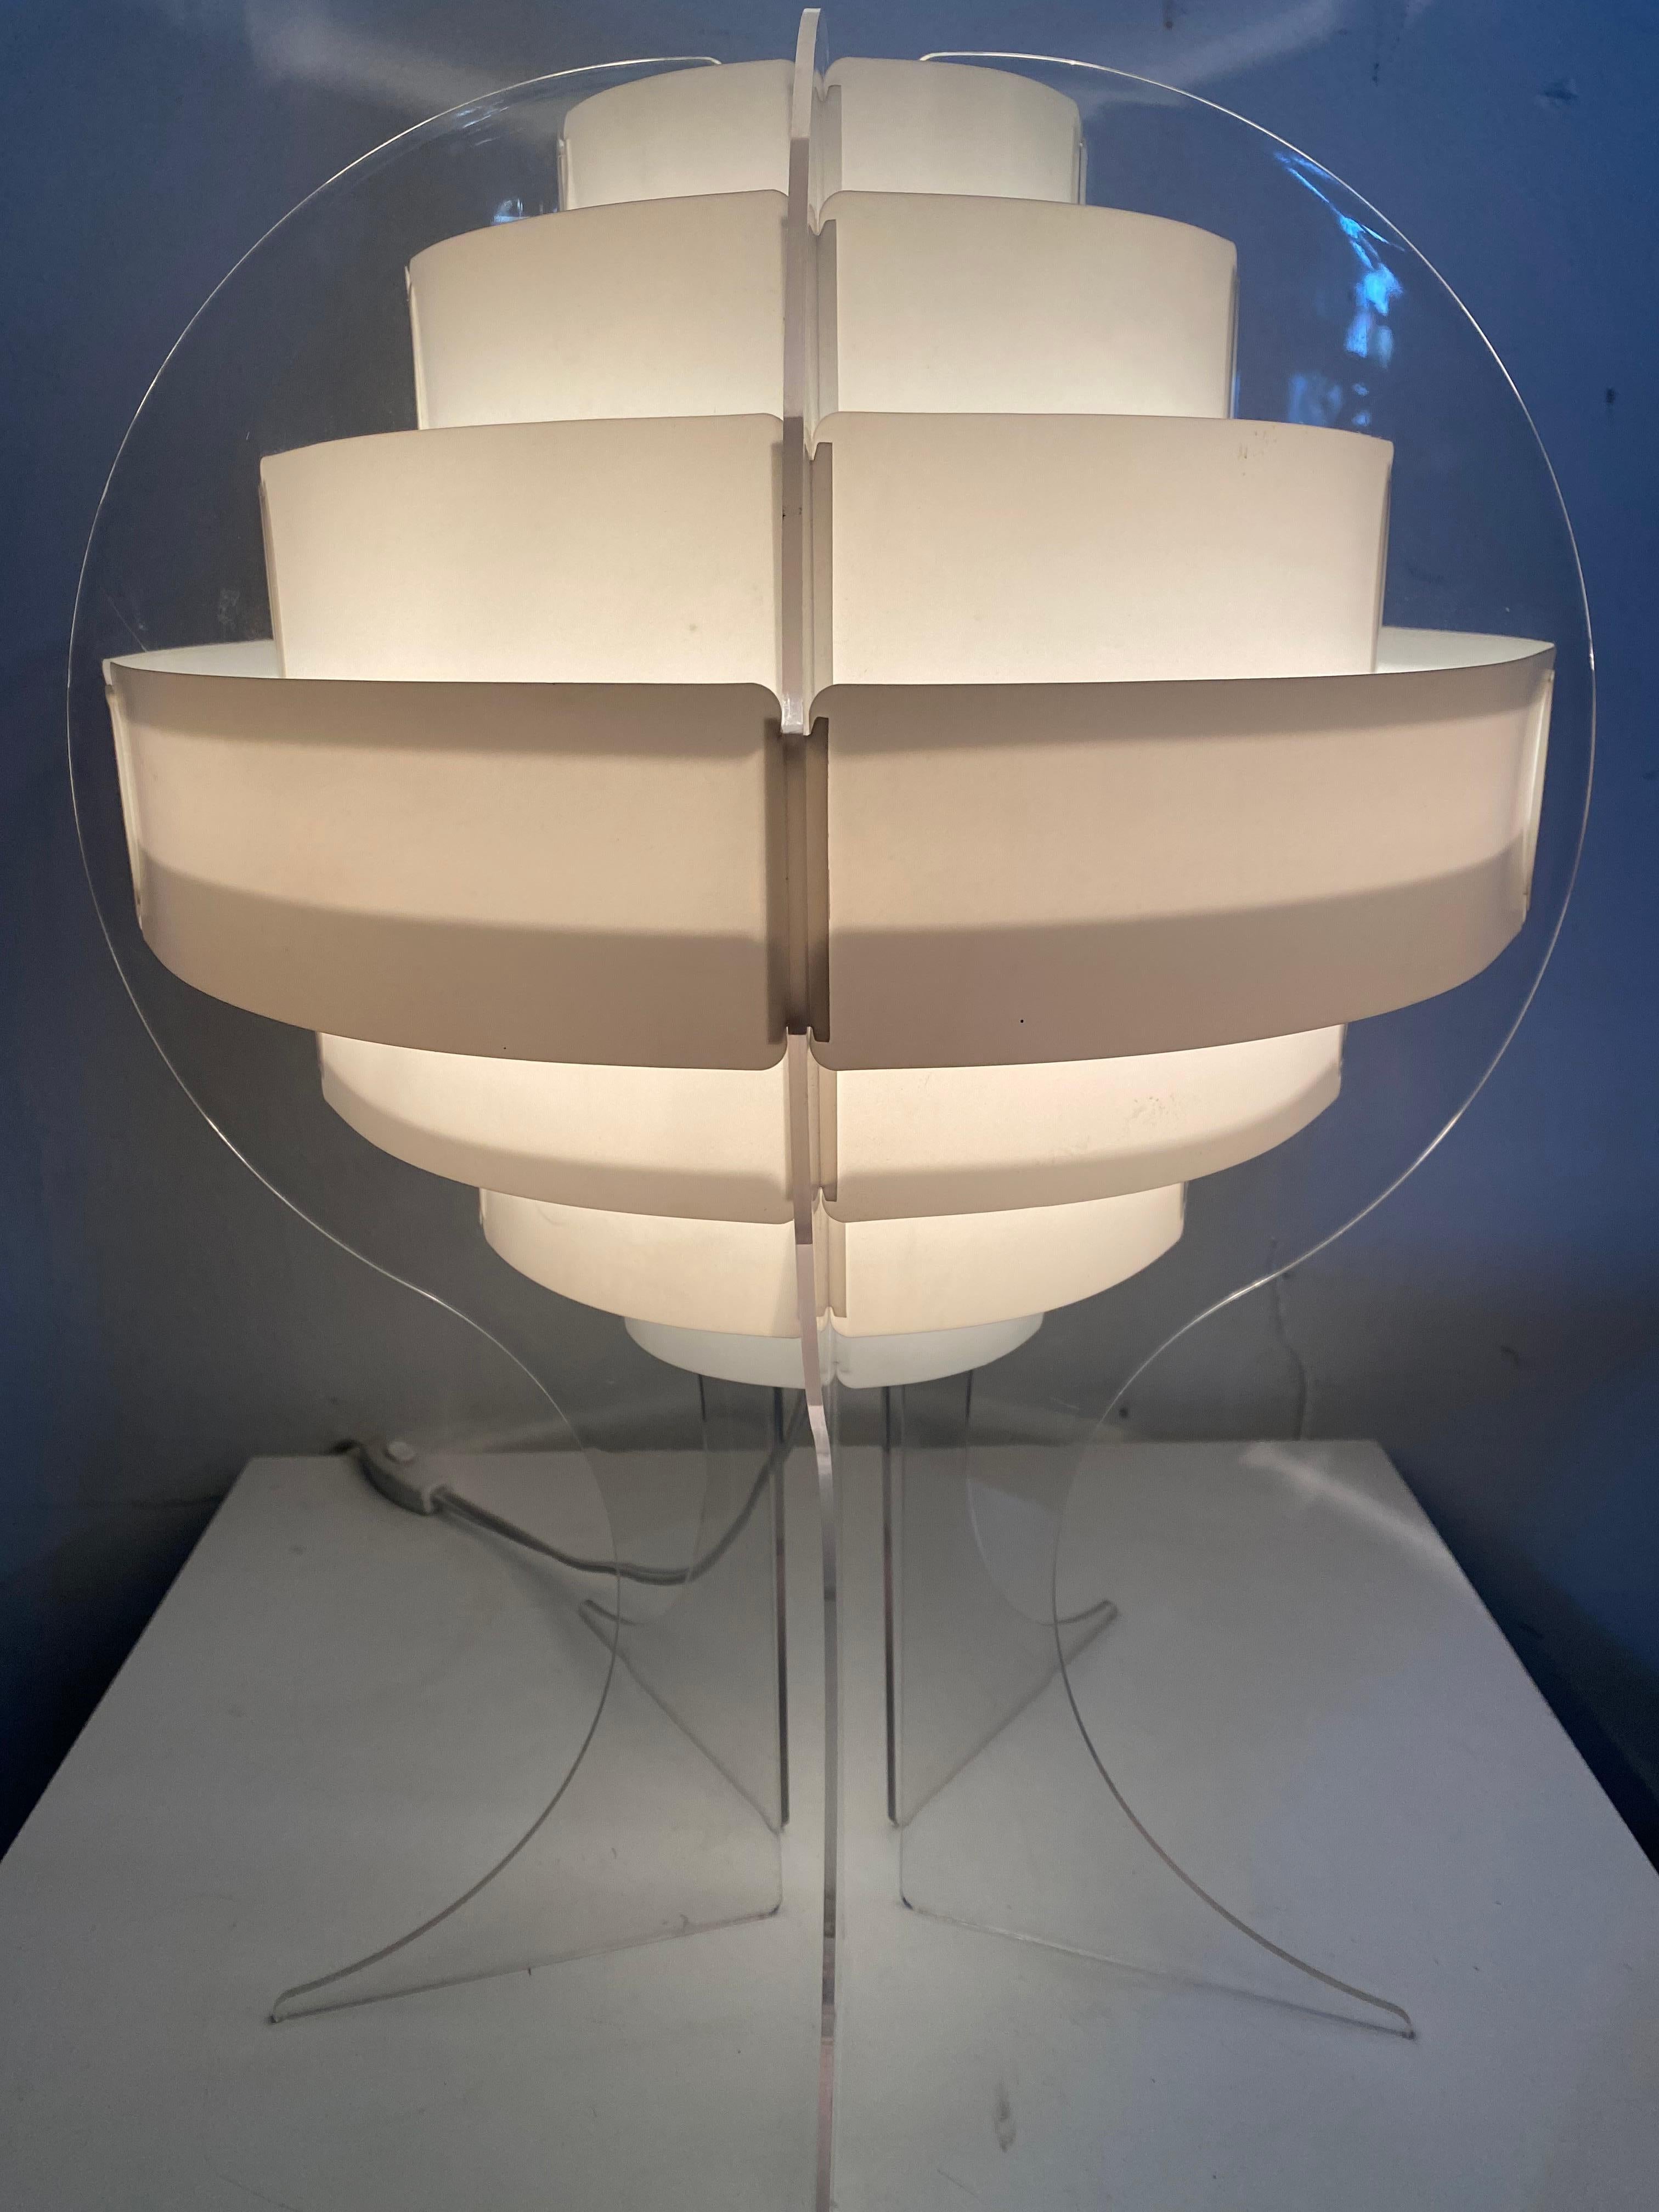 Lampe de table classique Danish Pop 1960s /Space Age Flemming Brylle & Preben Jacobsen, 1960s fabulous, plastic, screens with white plastic slats. Lucite, cadre acrylique.